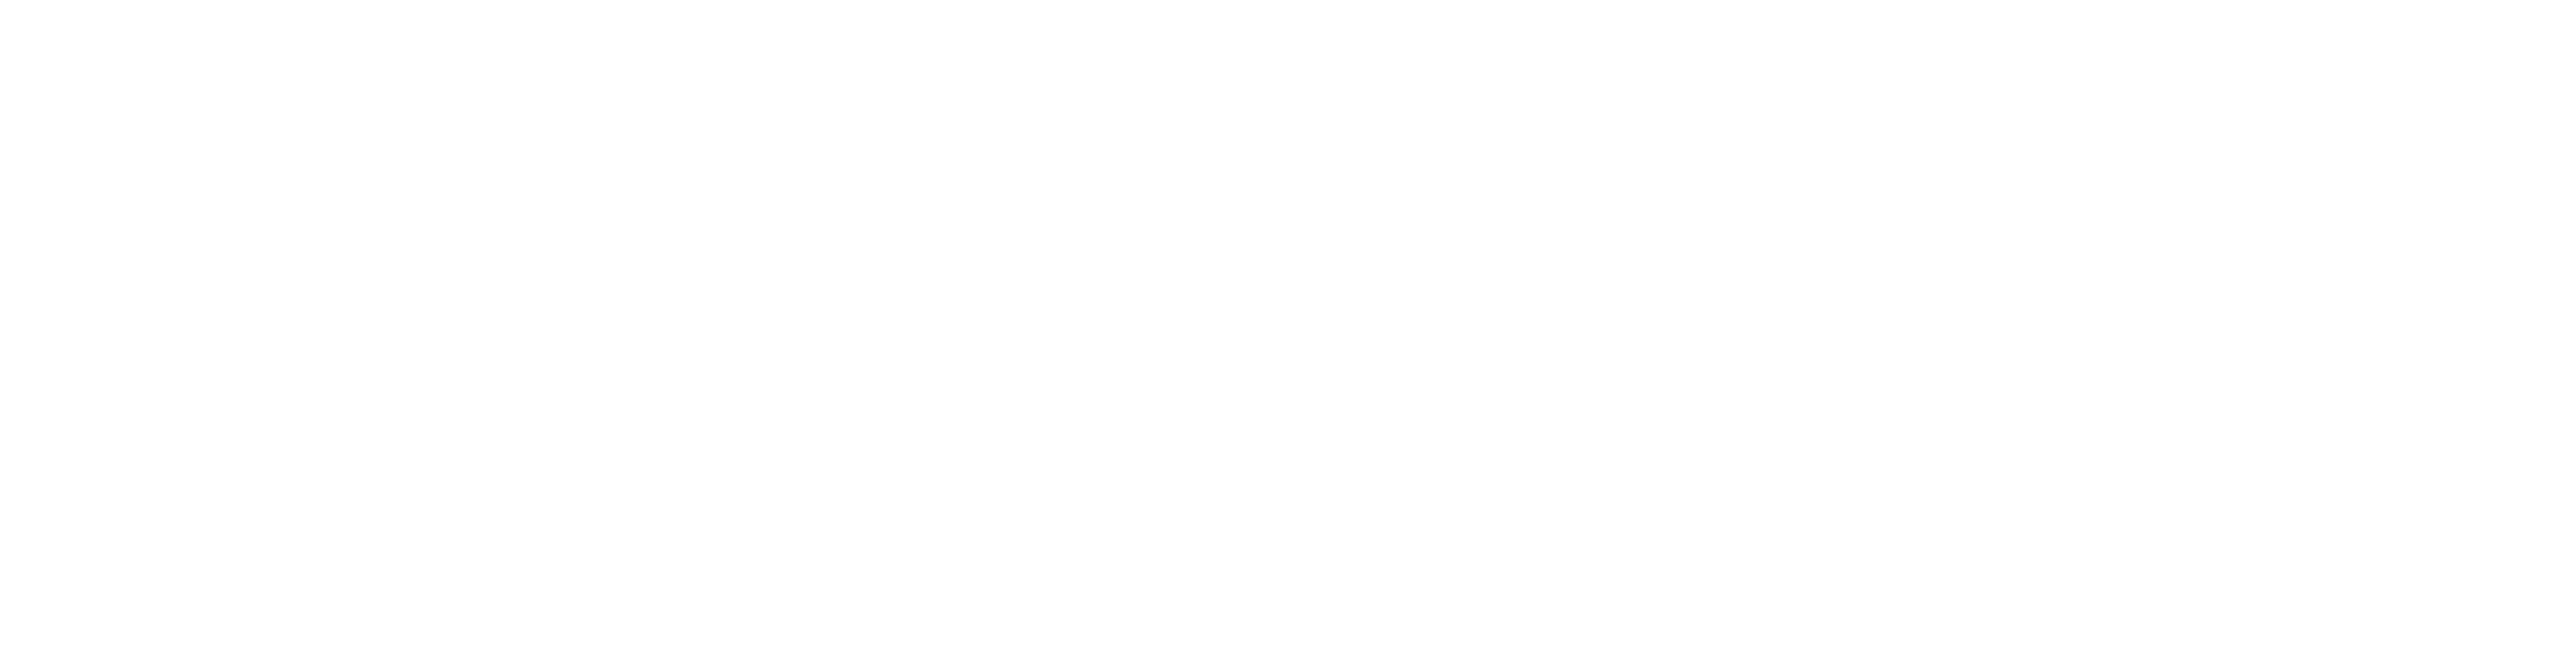 marq-frienxo white logo